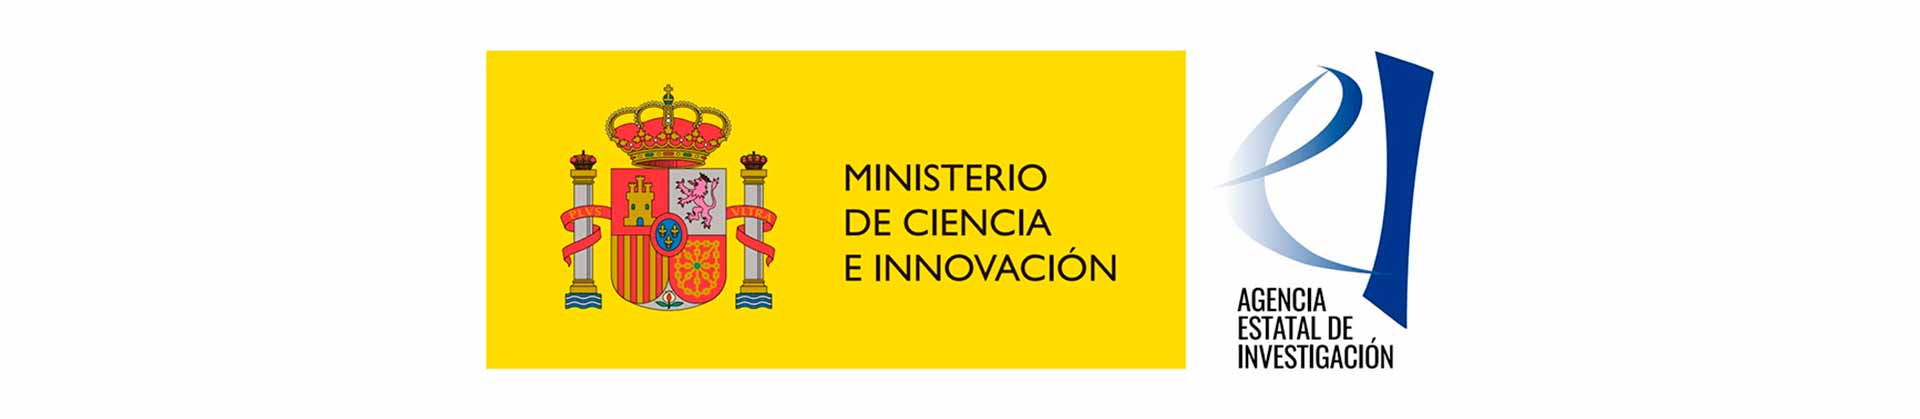 Ministerio de Innovación | ETSi